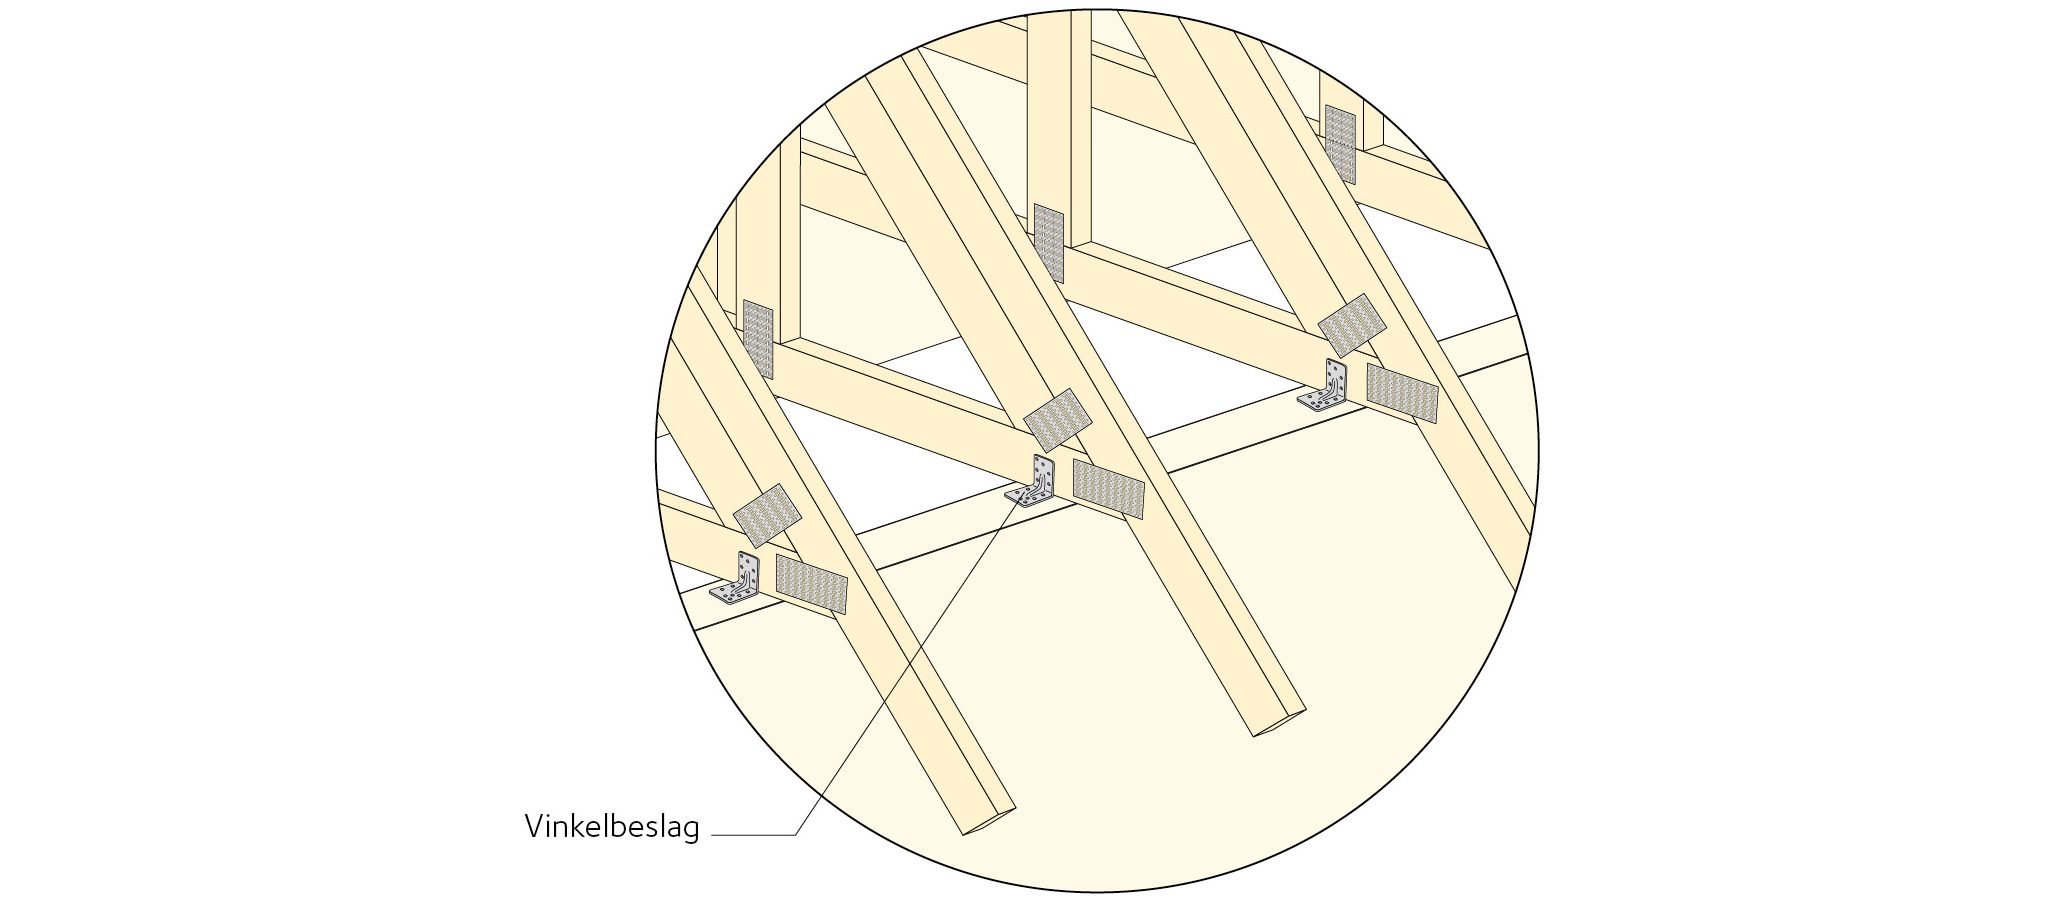 Detalj b) Ramverkstakstolar förankras på ett likartat sätt som för fackverkstakstolar så att horisontella och vertikala krafter kan föras ner till vägg